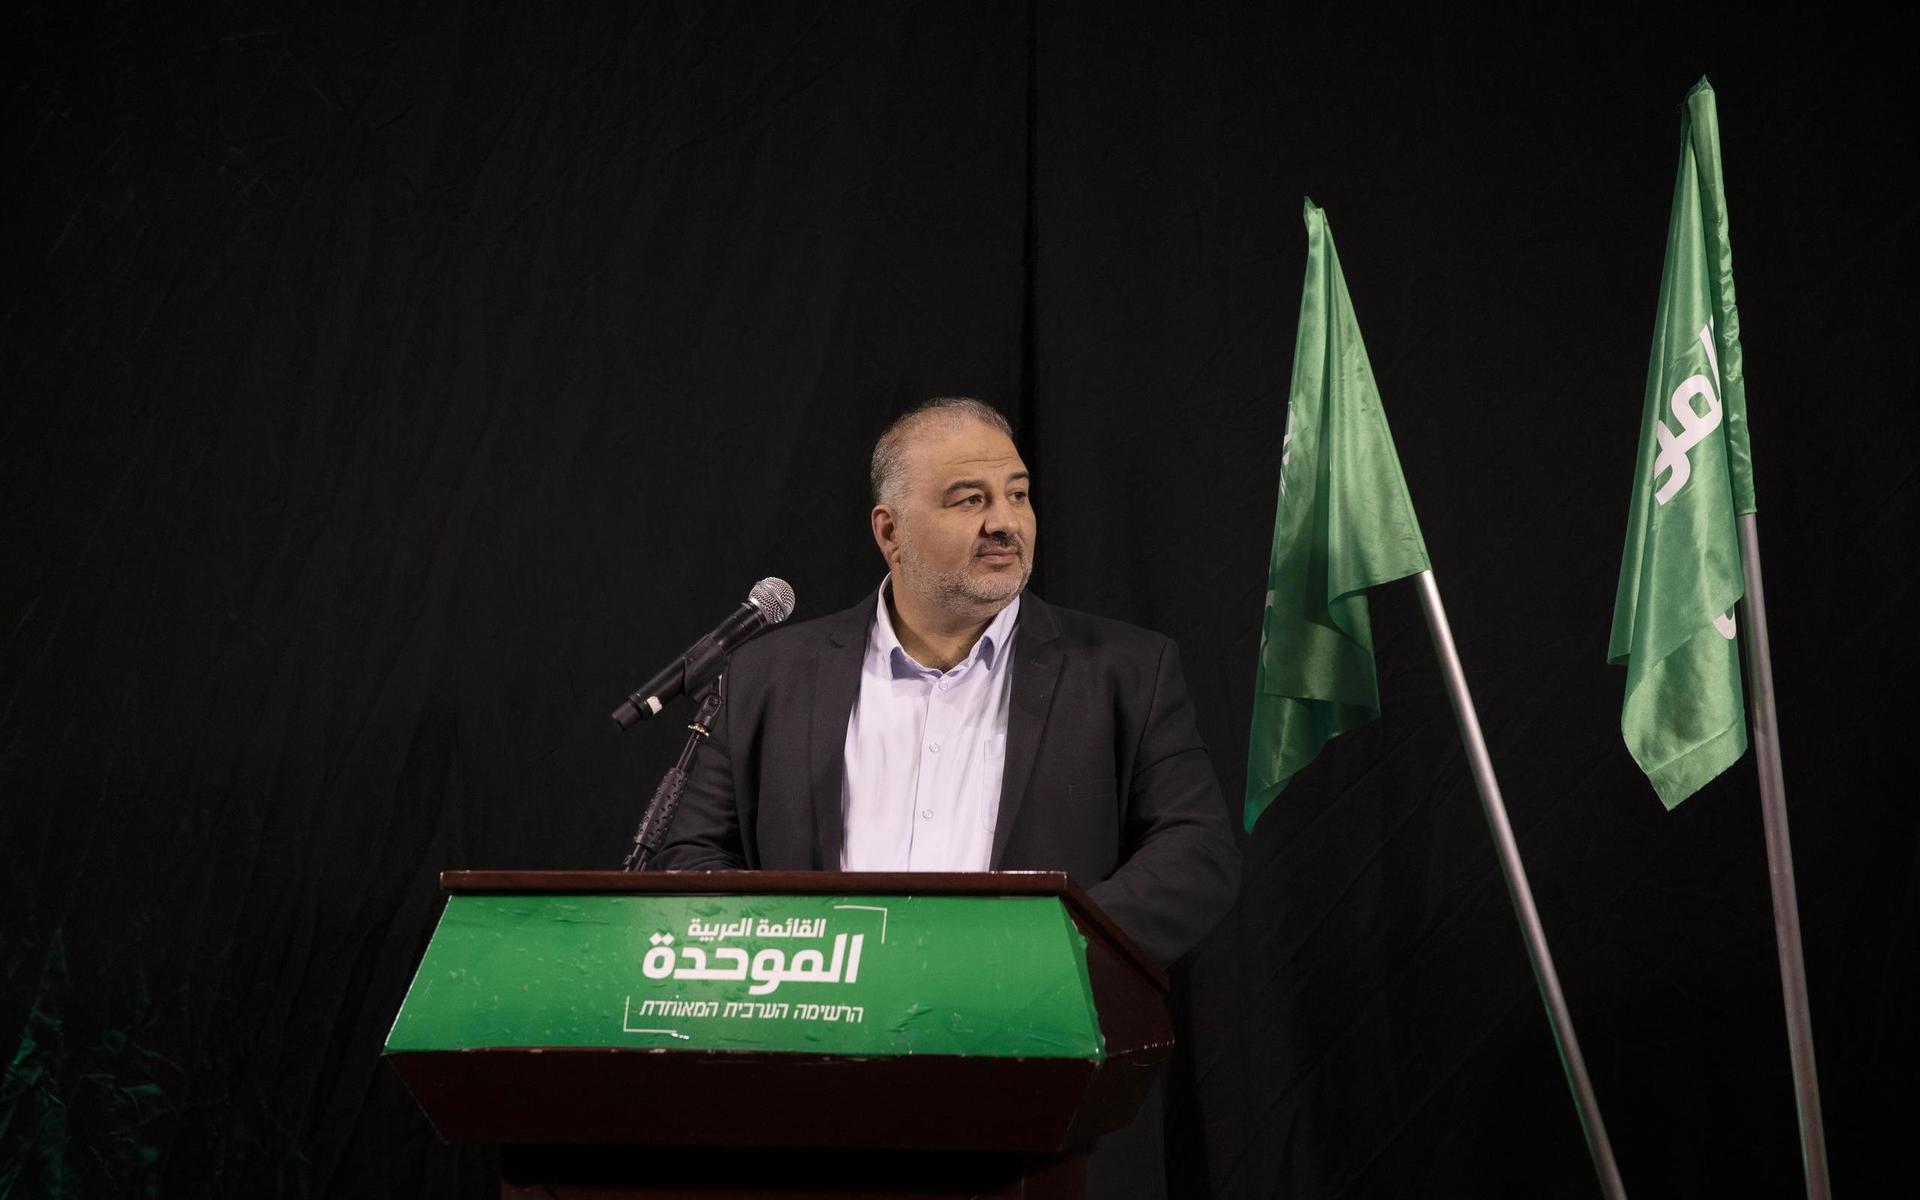 Mansour Abbas ledare för det arabiska islamistpartiet Ra’am fick med sig flera krav för att släppa fram koalitionen. 